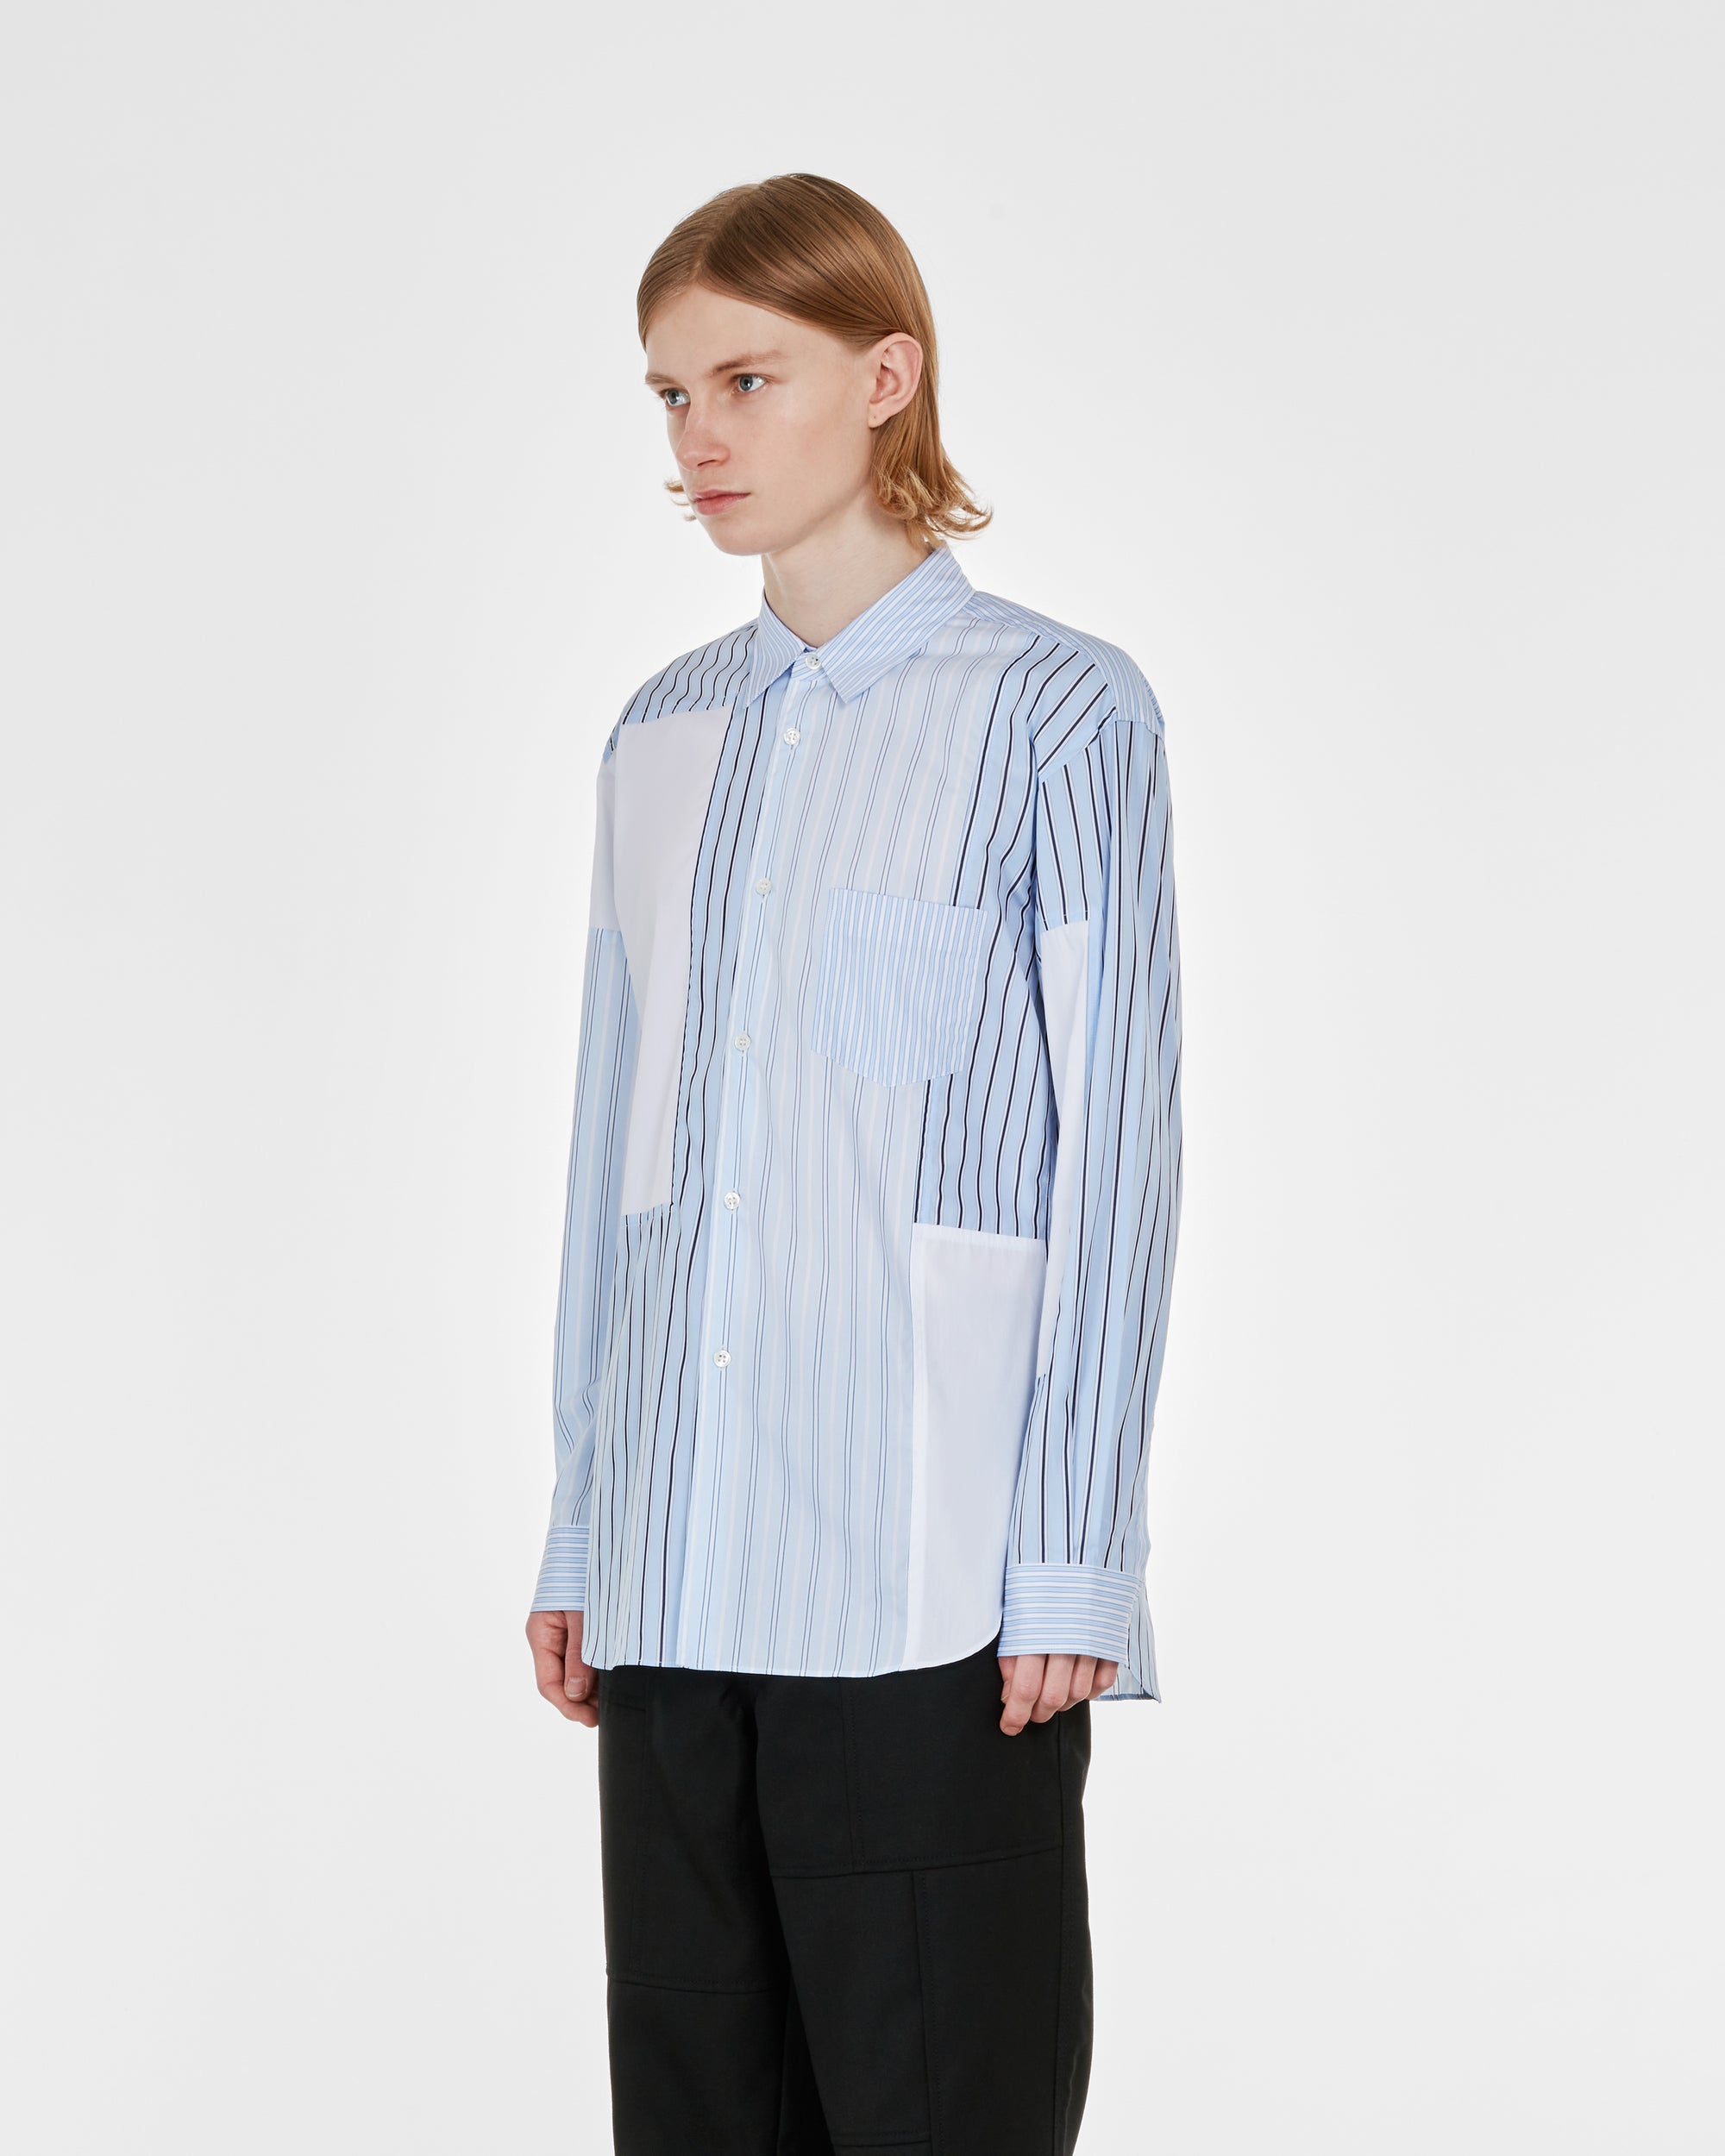 CDG Shirt - Men's Cotton Stripe Poplin Shirt - (White) view 3